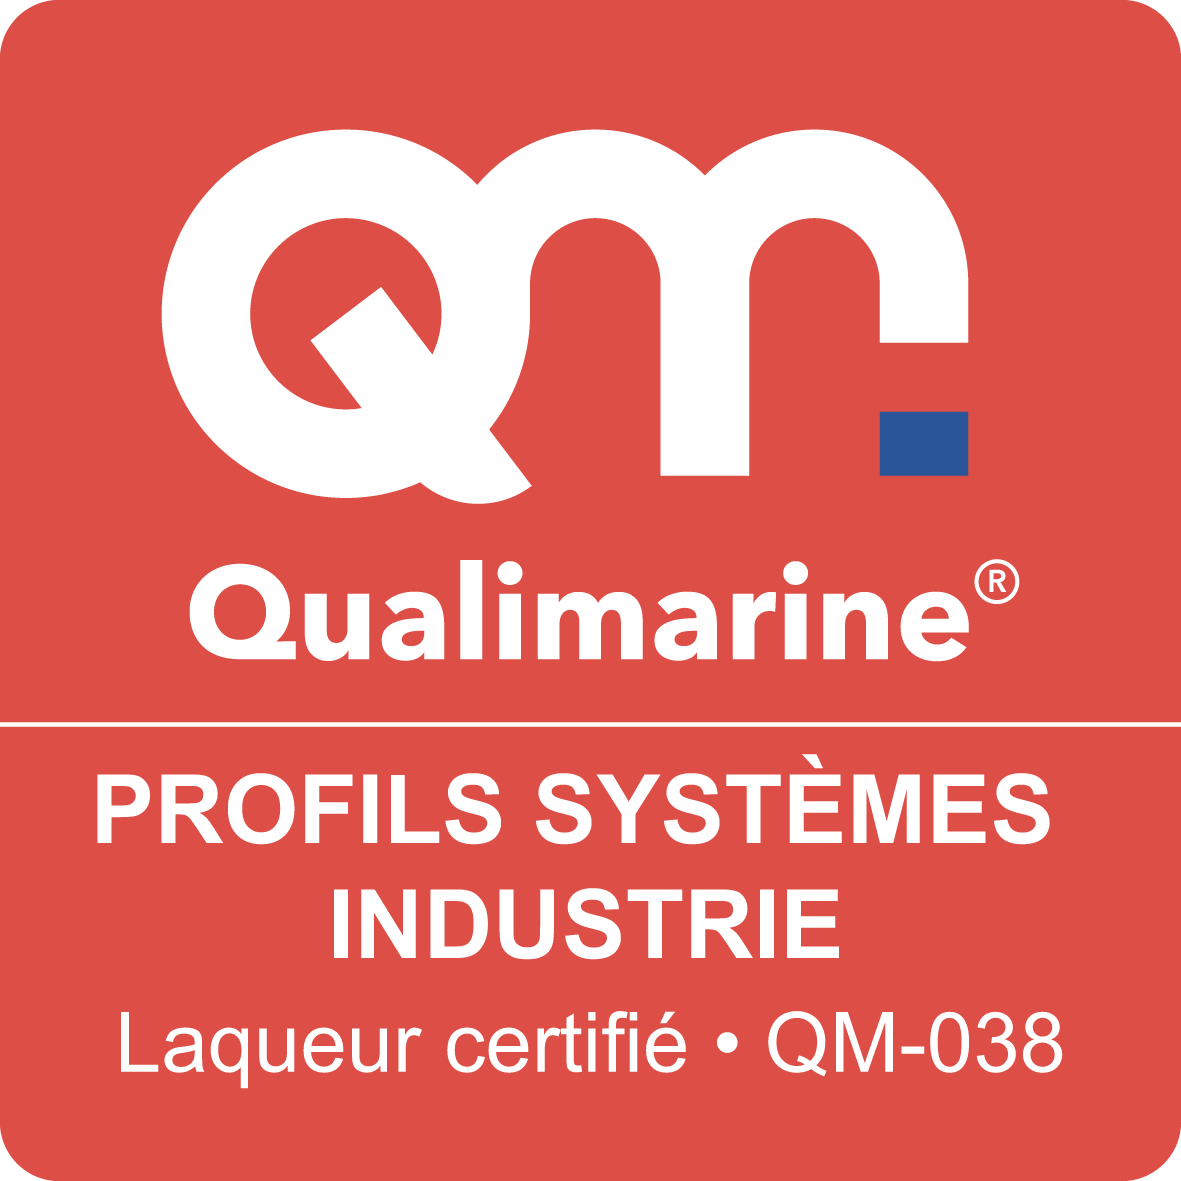 qualimarine logo